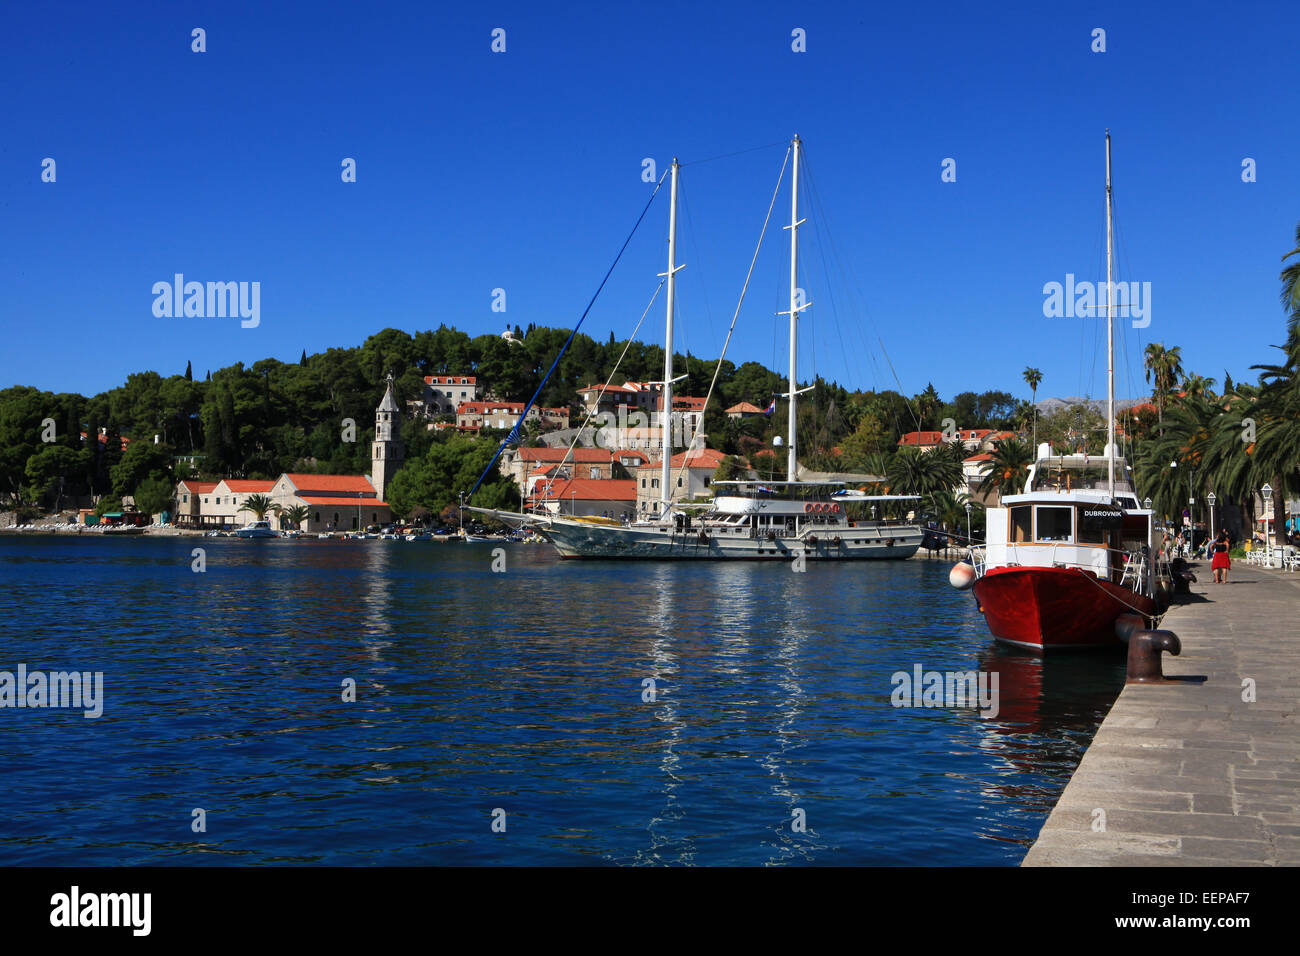 Hafen von Cavtat, Kroatien, Boote Yachten im Hafen, Wandervorführung Meer; Mitteleuropa; Südost-Europa; und das Mittelmeer. Stockfoto